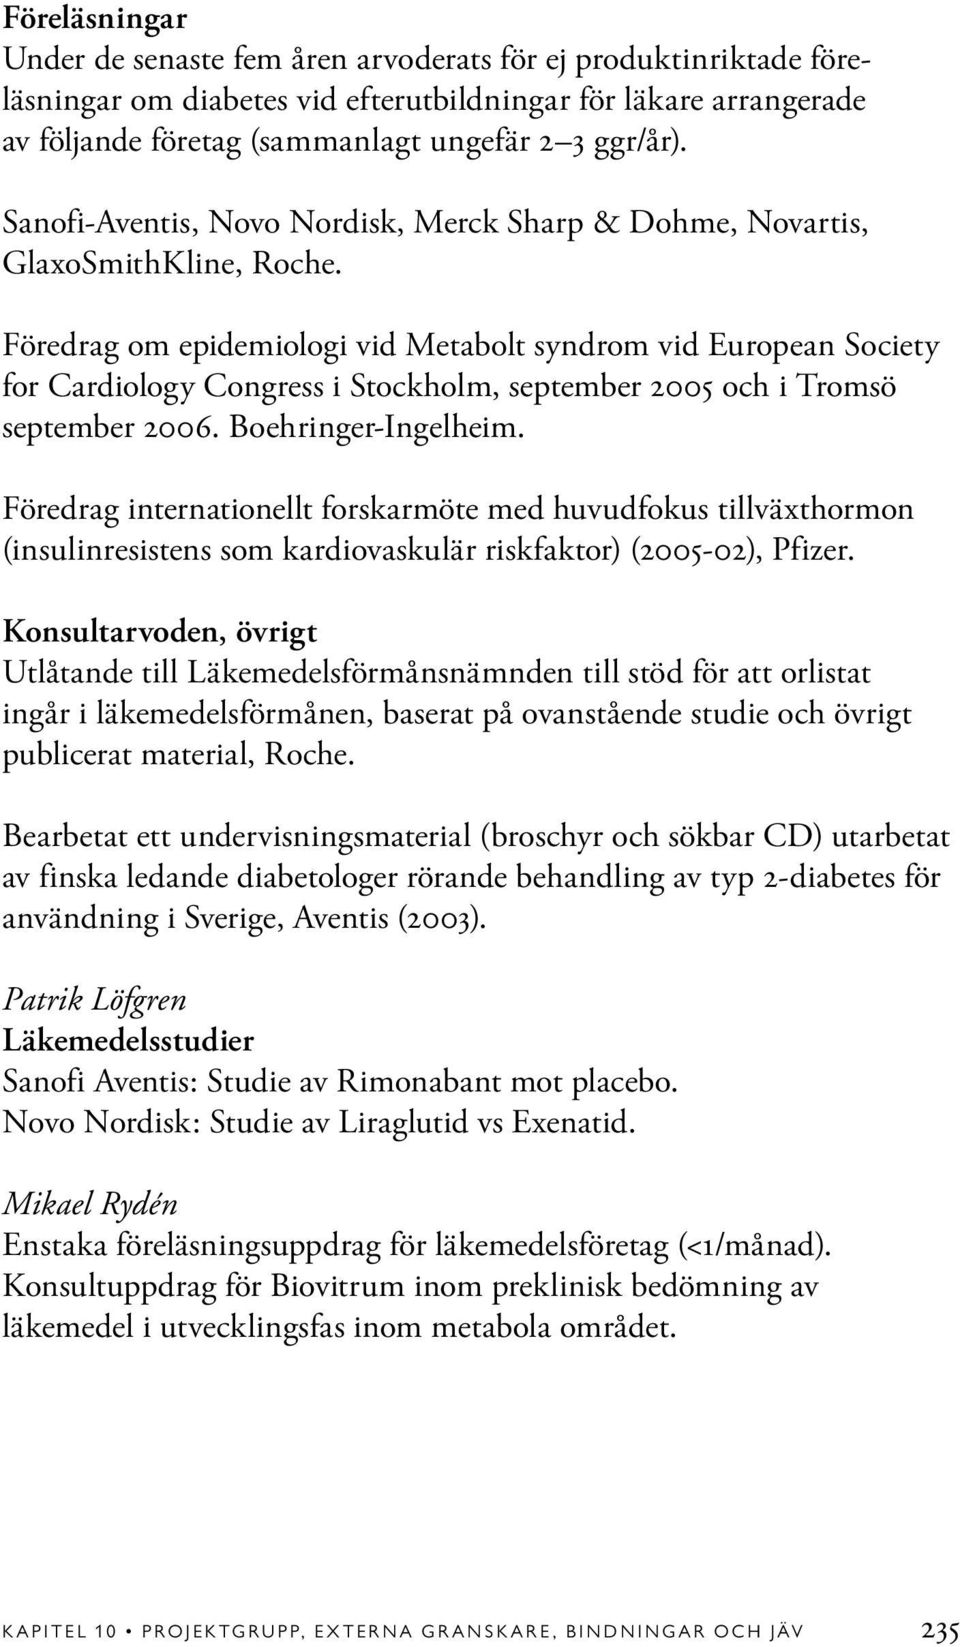 Föredrag om epidemiologi vid Metabolt syndrom vid European Society for Cardiology Congress i Stockholm, september 2005 och i Tromsö september 2006. Boehringer-Ingelheim.